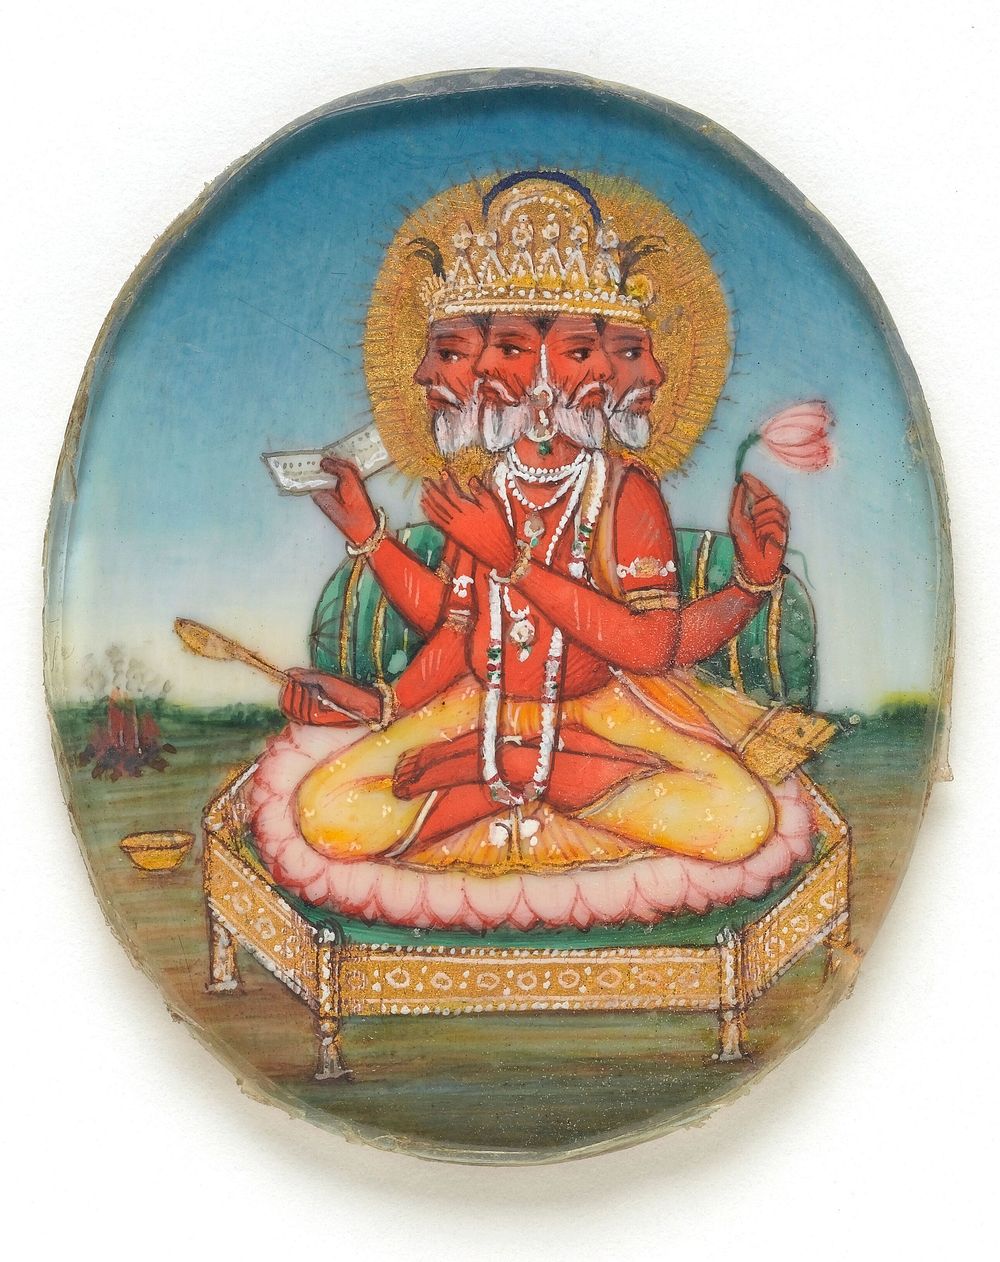 Shri Rama shooting an arrow at Ravana, the ten-headed demon. Gouache painting by an Indian artist.